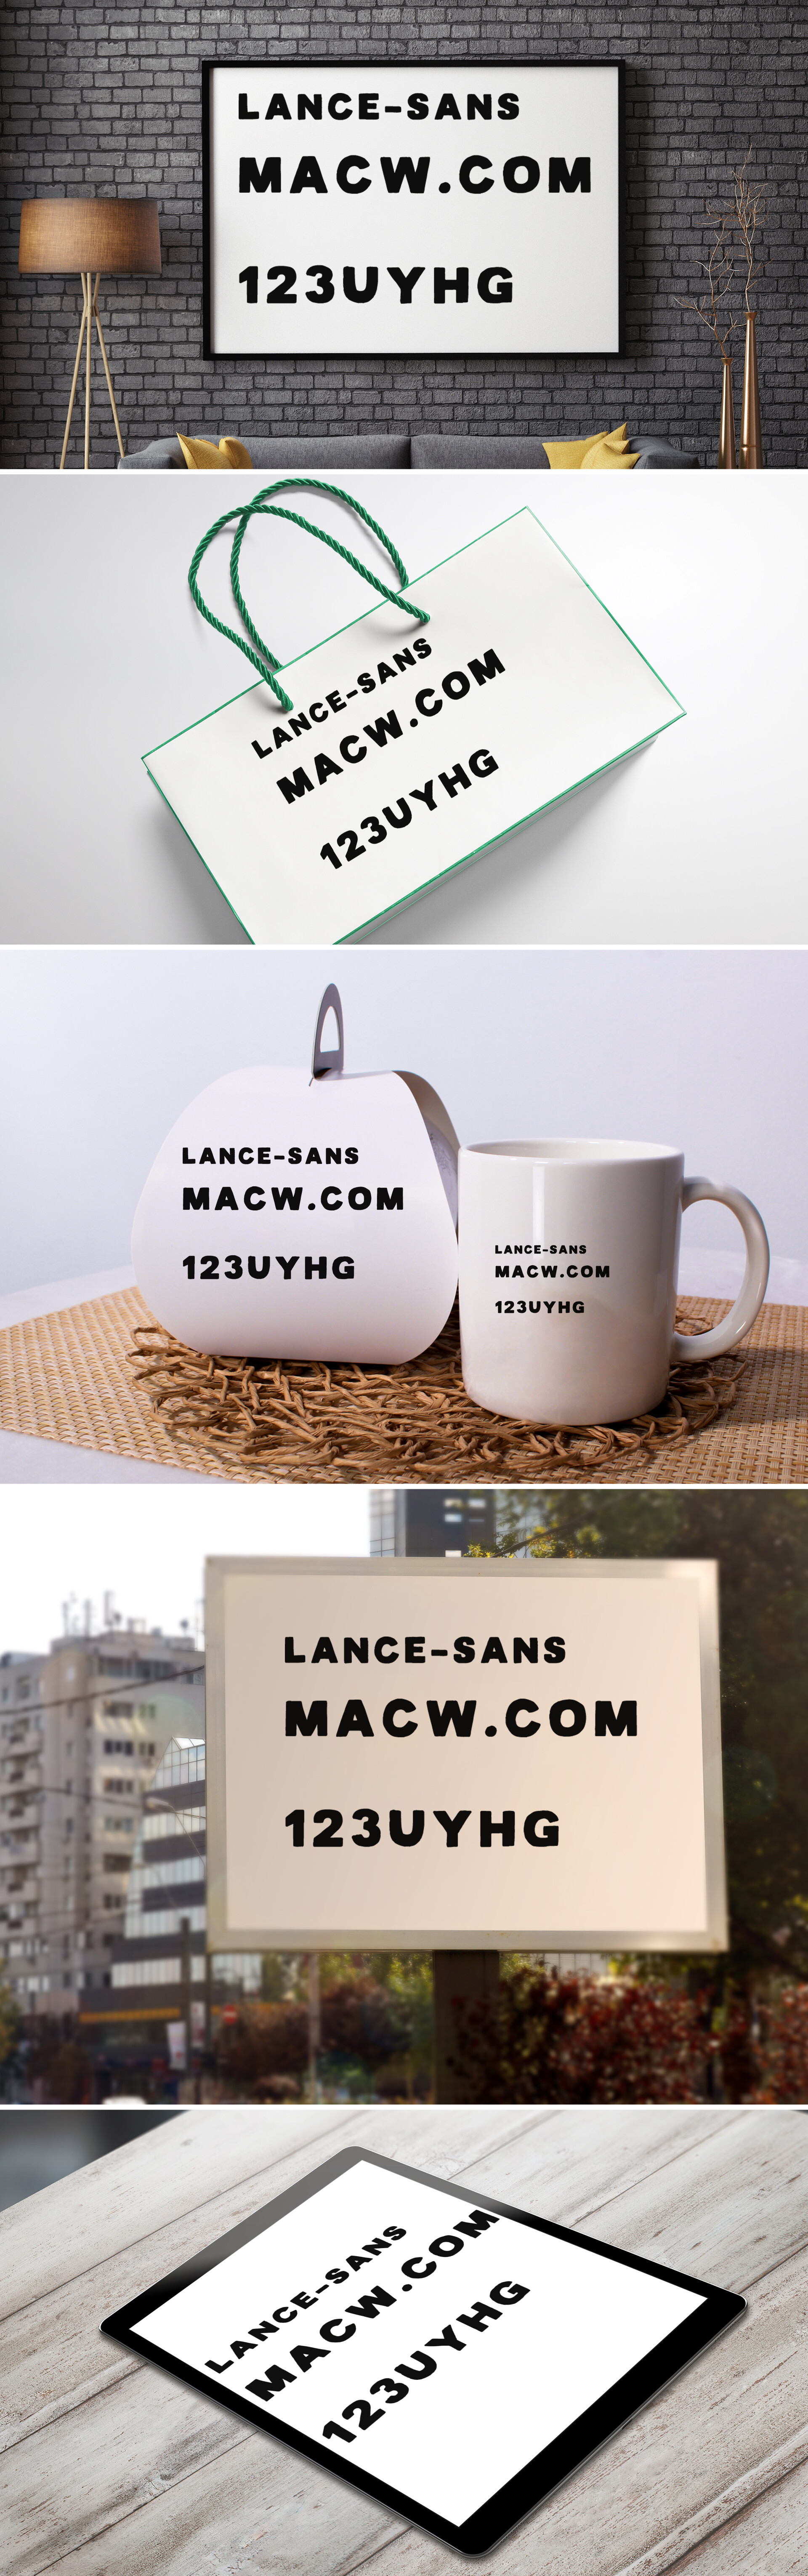 粗体印刷风格Mac字体Lance Sans and Serif